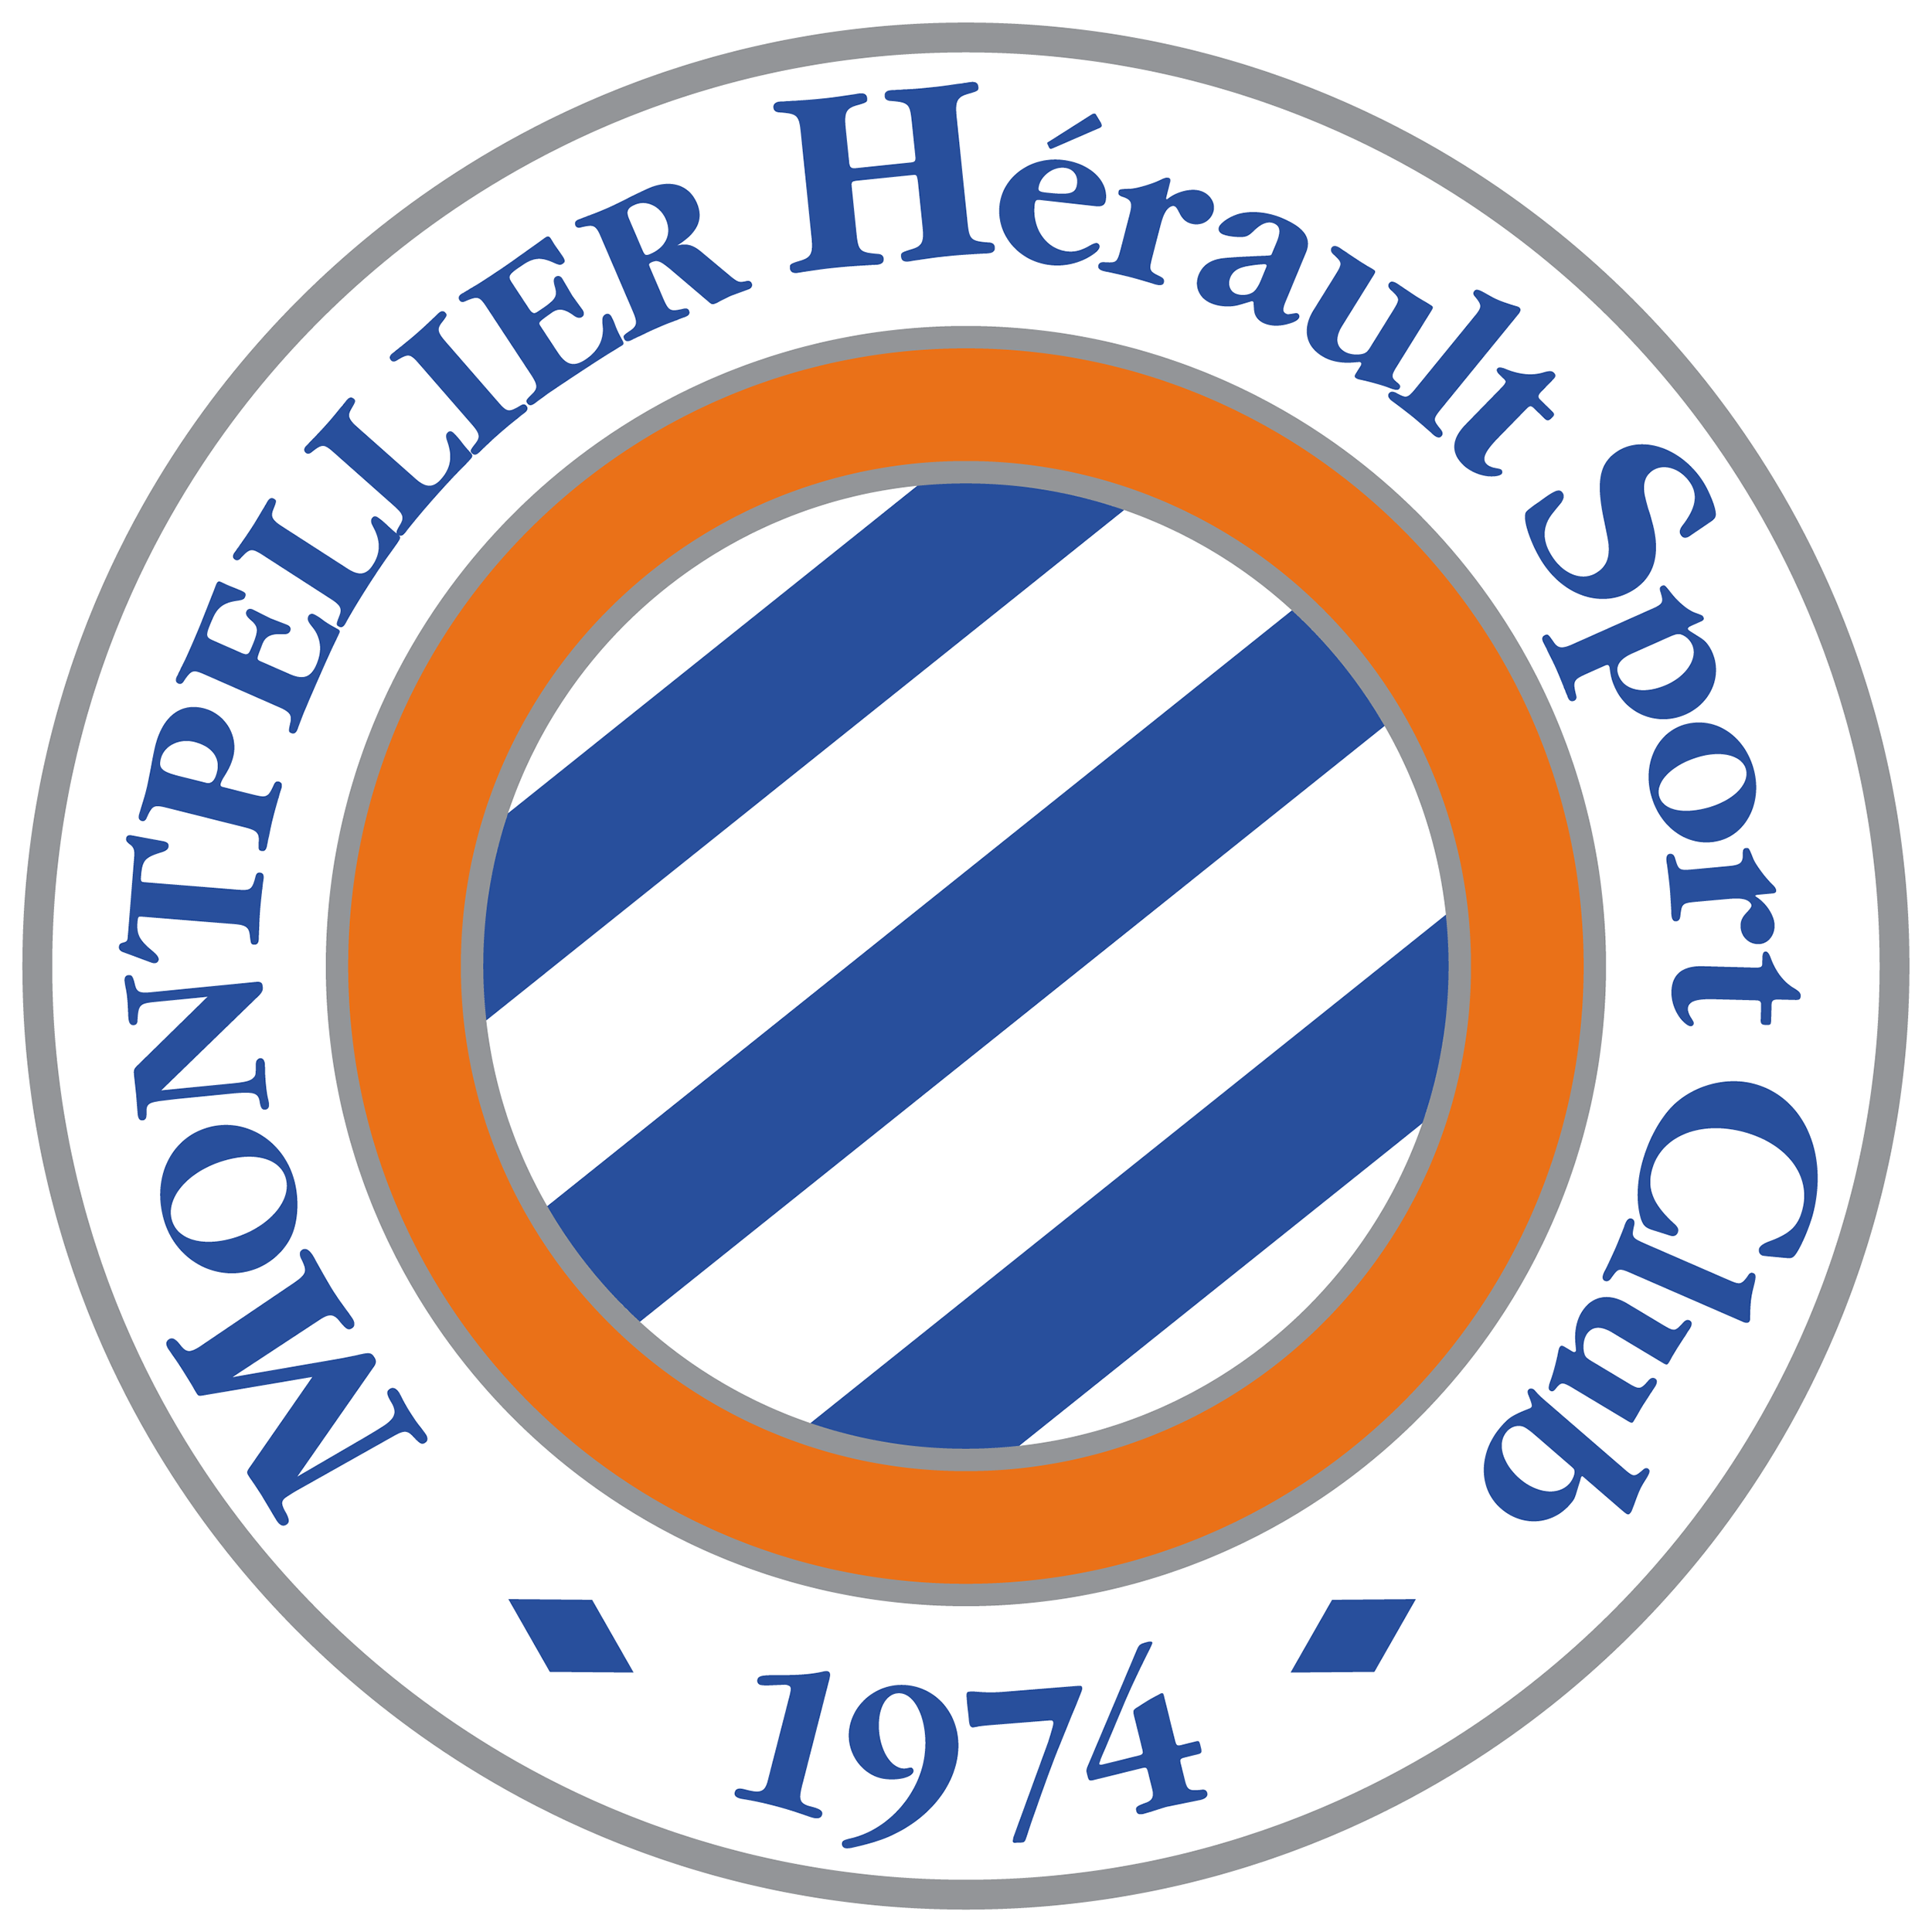 Montpellier (u19) team logo